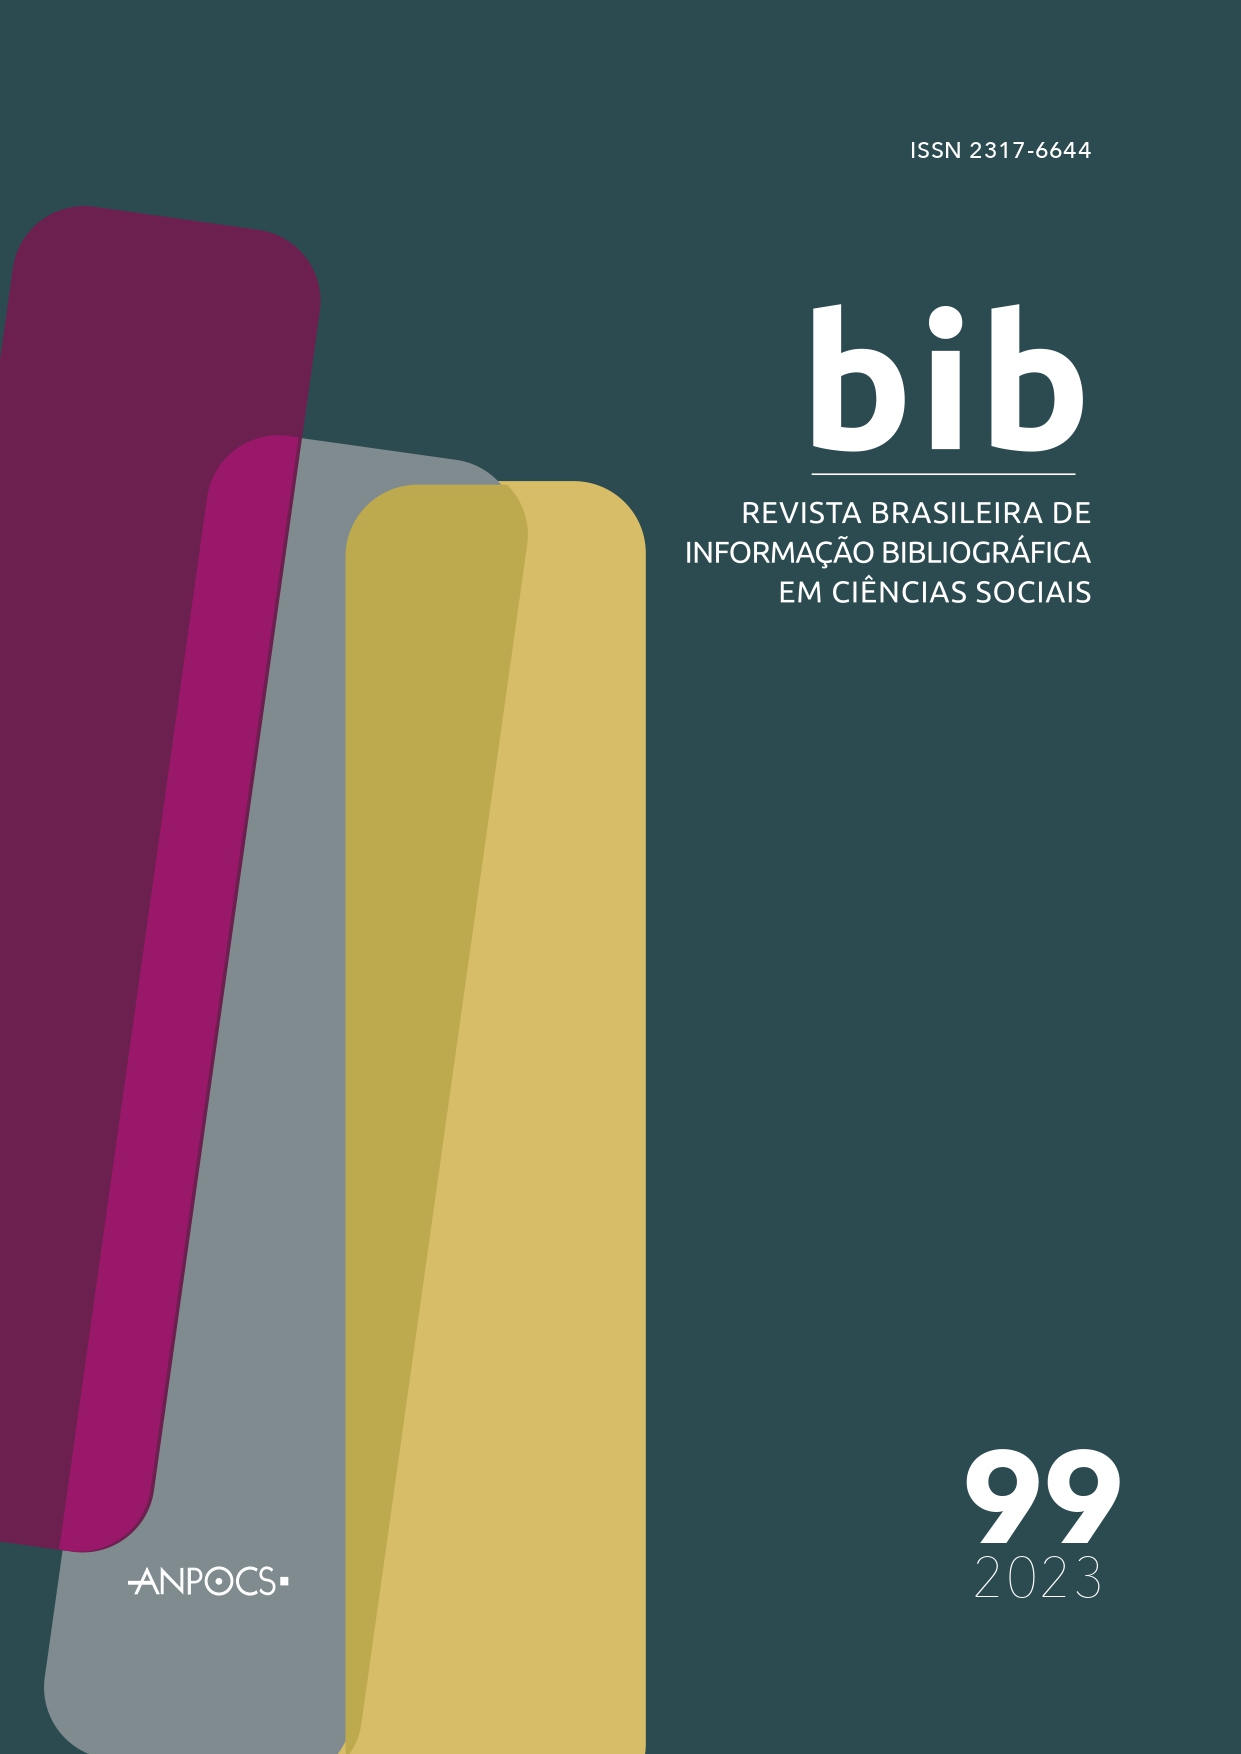 					Ver Núm. 99 (2023): Revista Brasileira de Informação Bibliográfica em Ciências Sociais – BIB
				